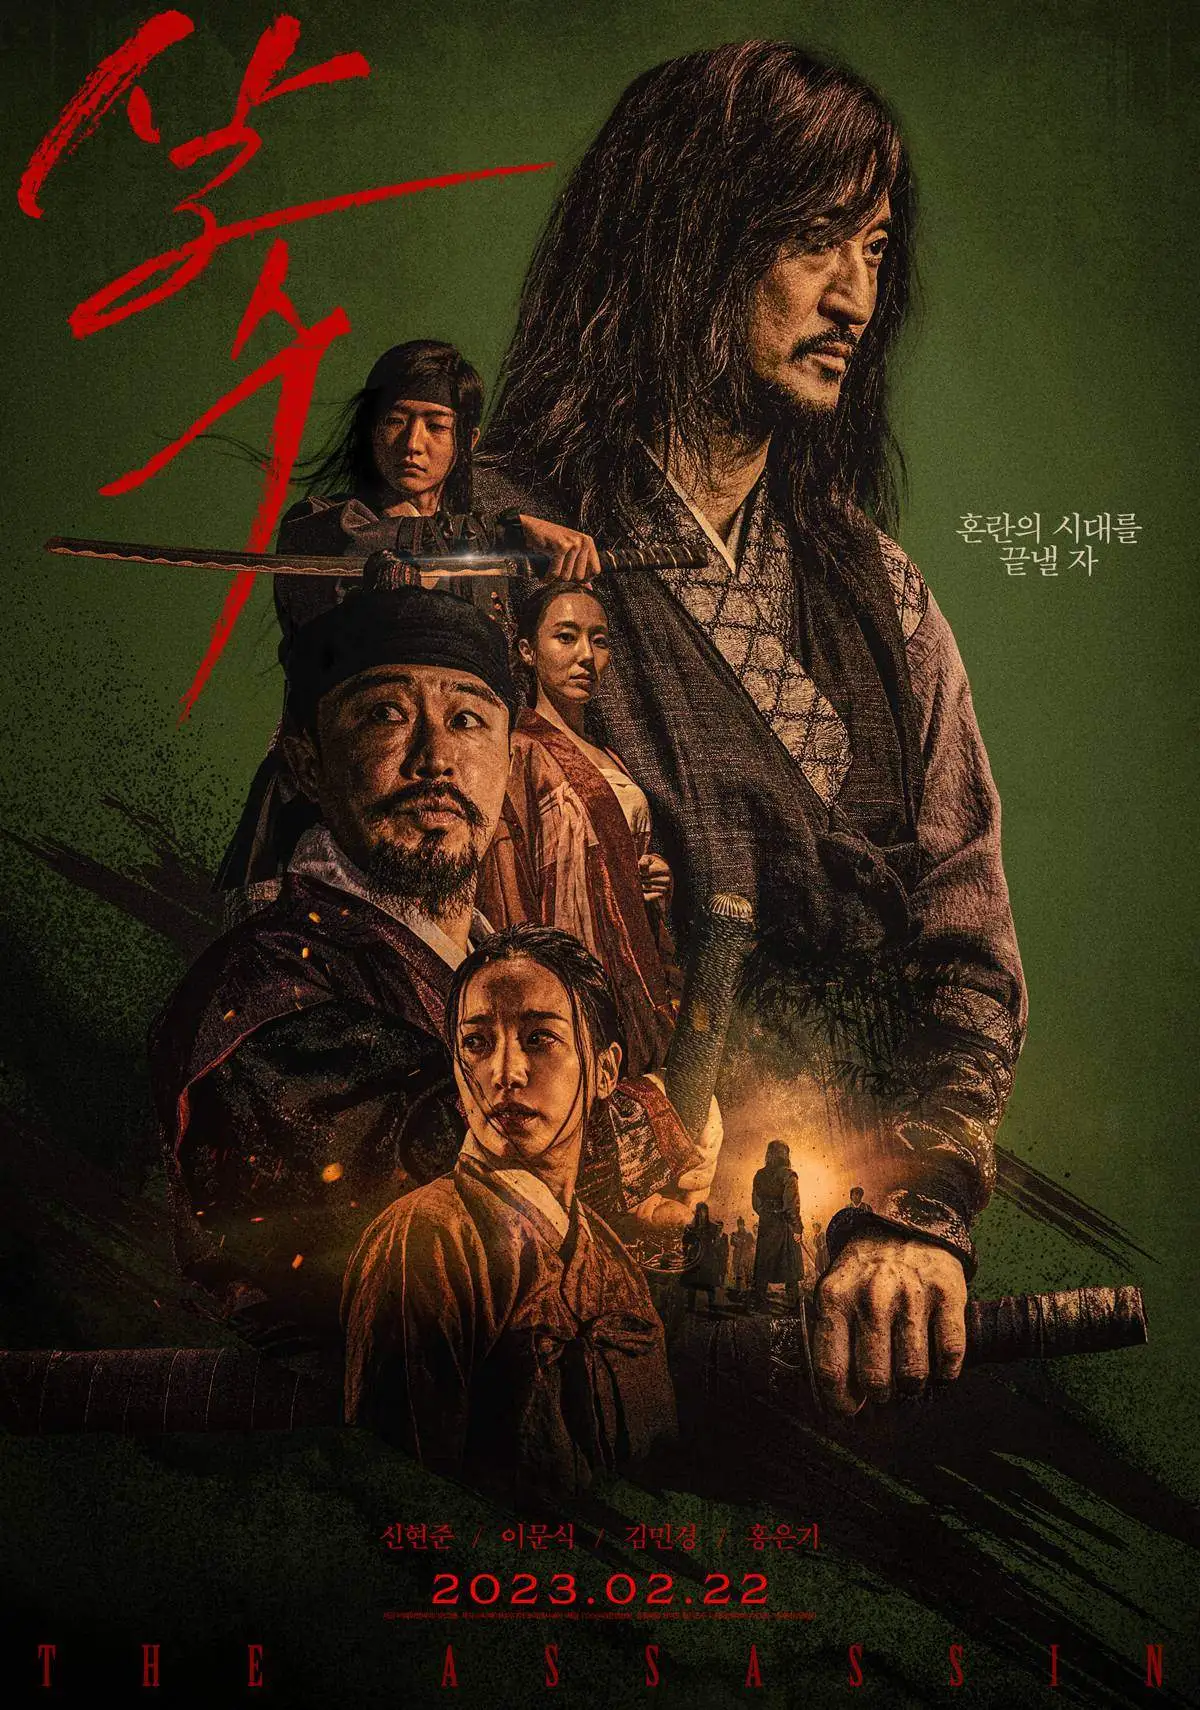 ดูหนังออนไลน์ The Assassin (2023) หนังเกาหลี